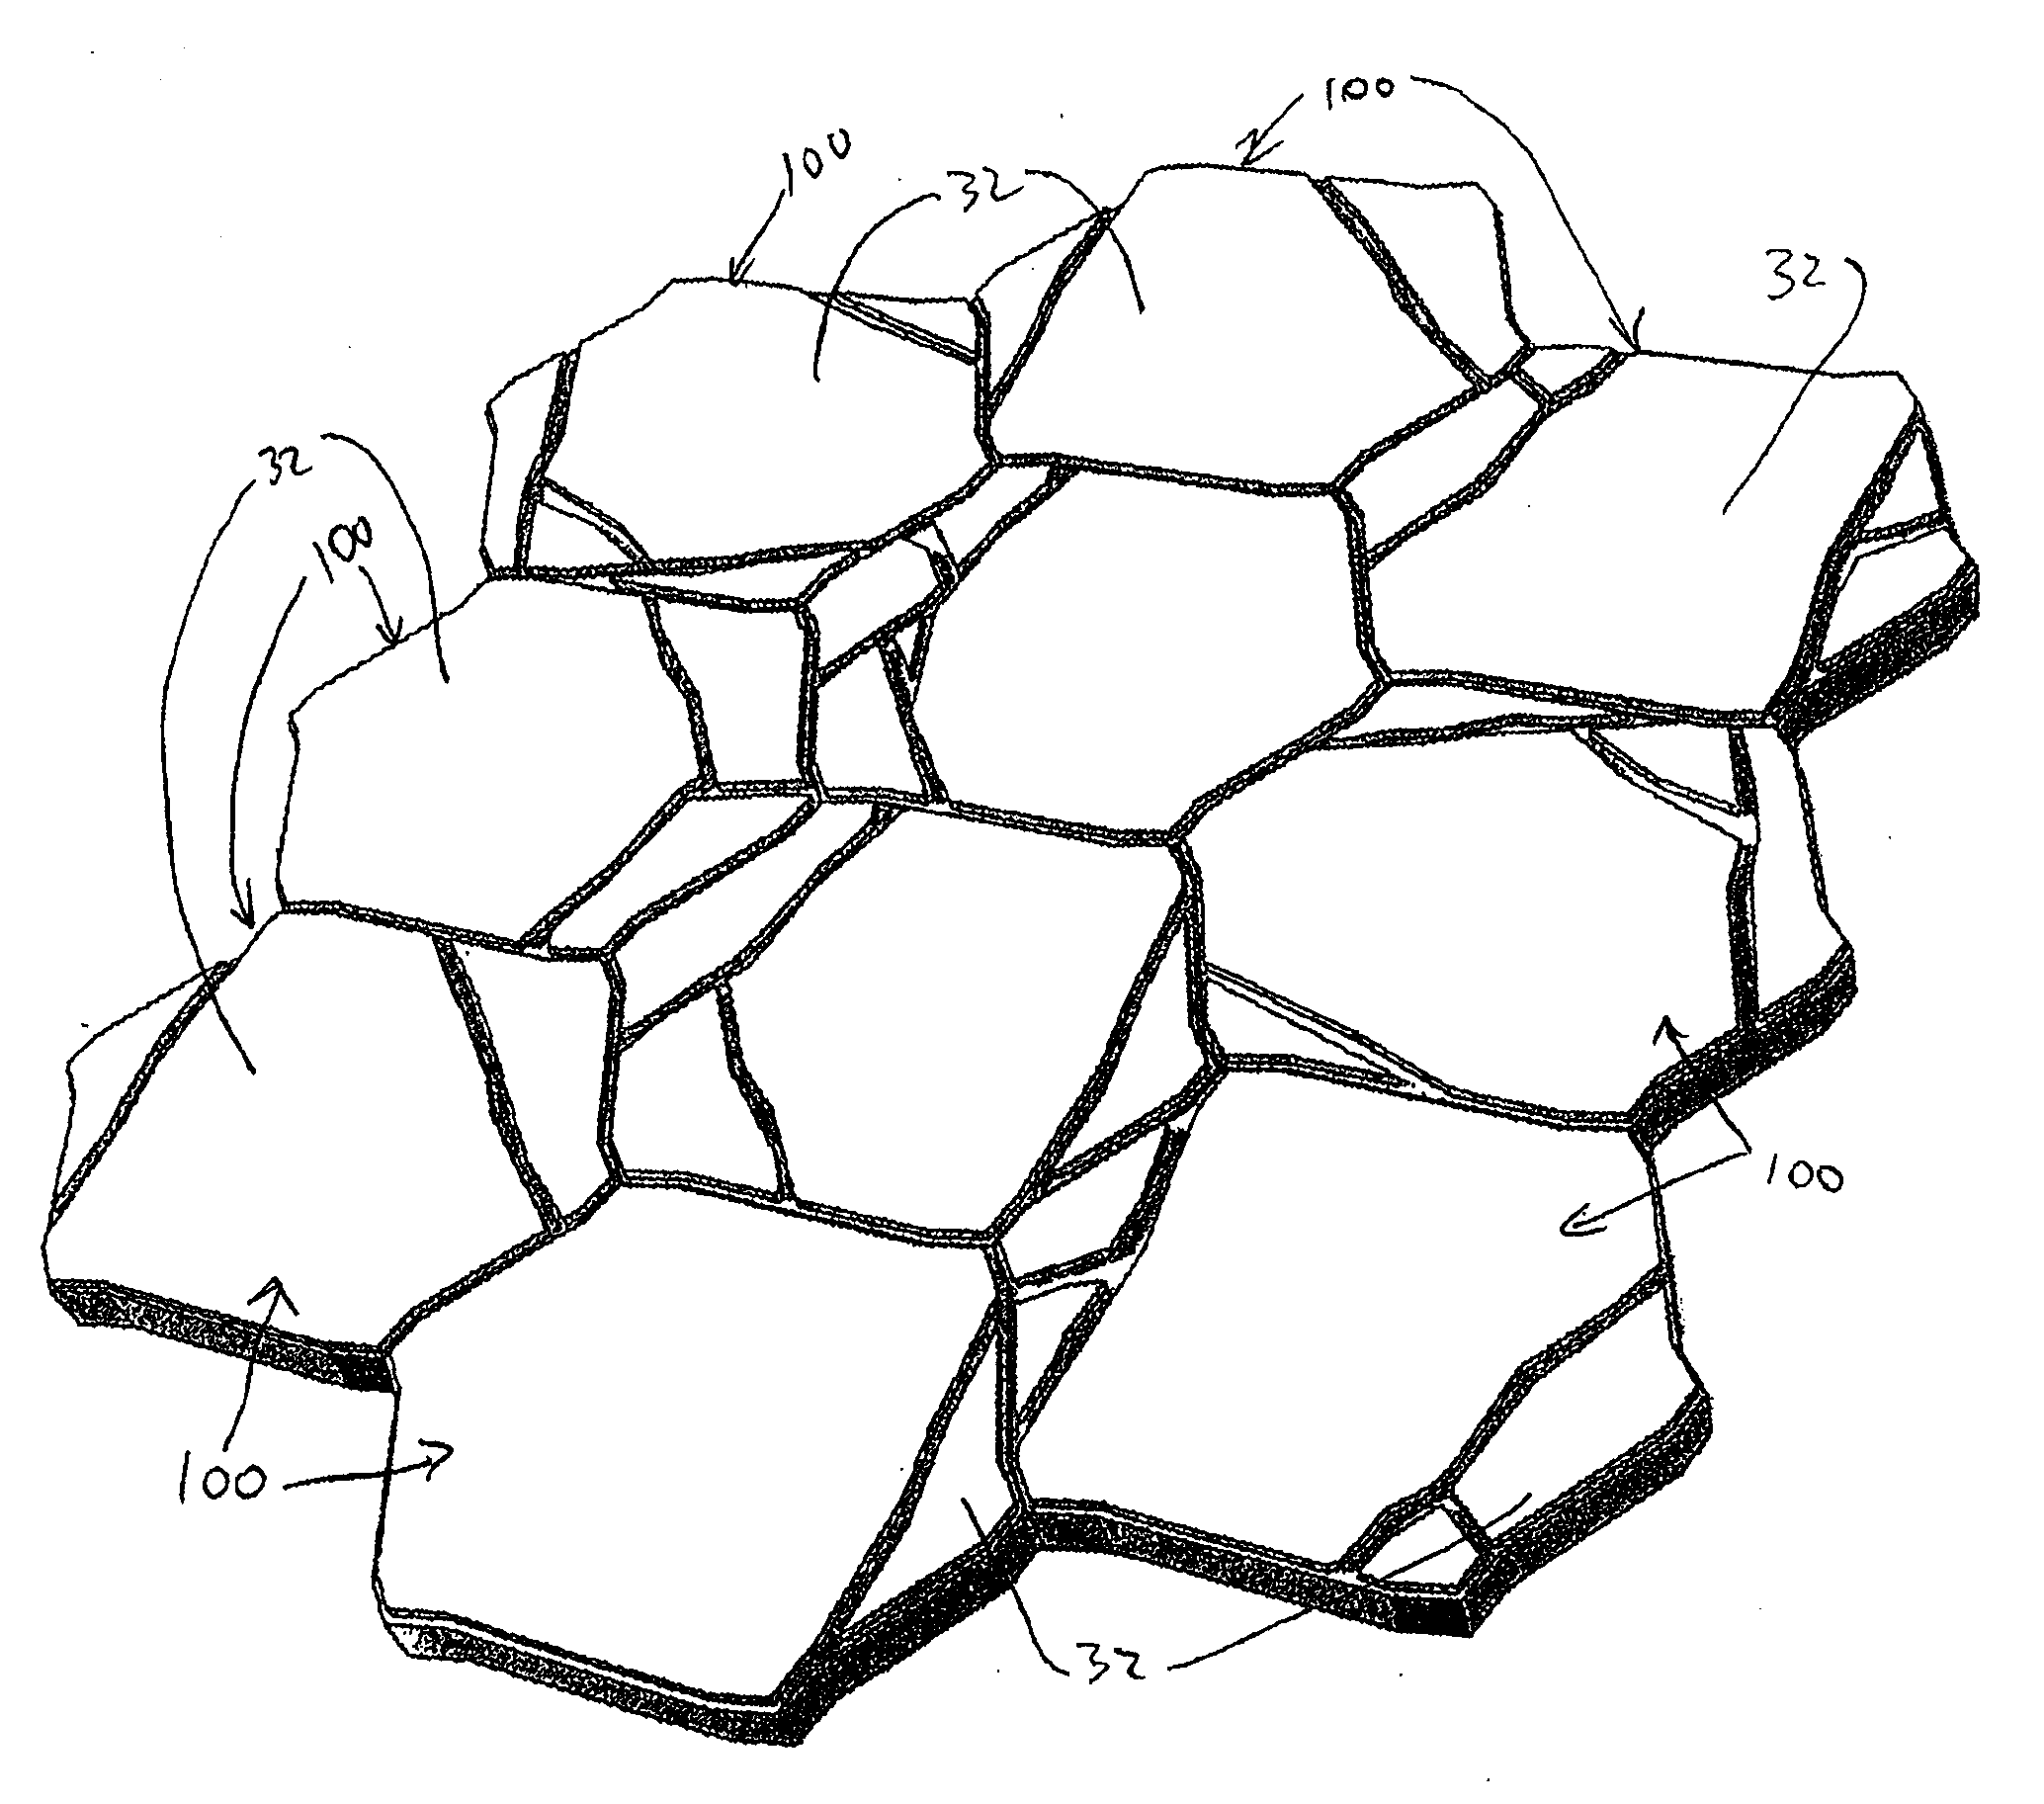 Artificial stone